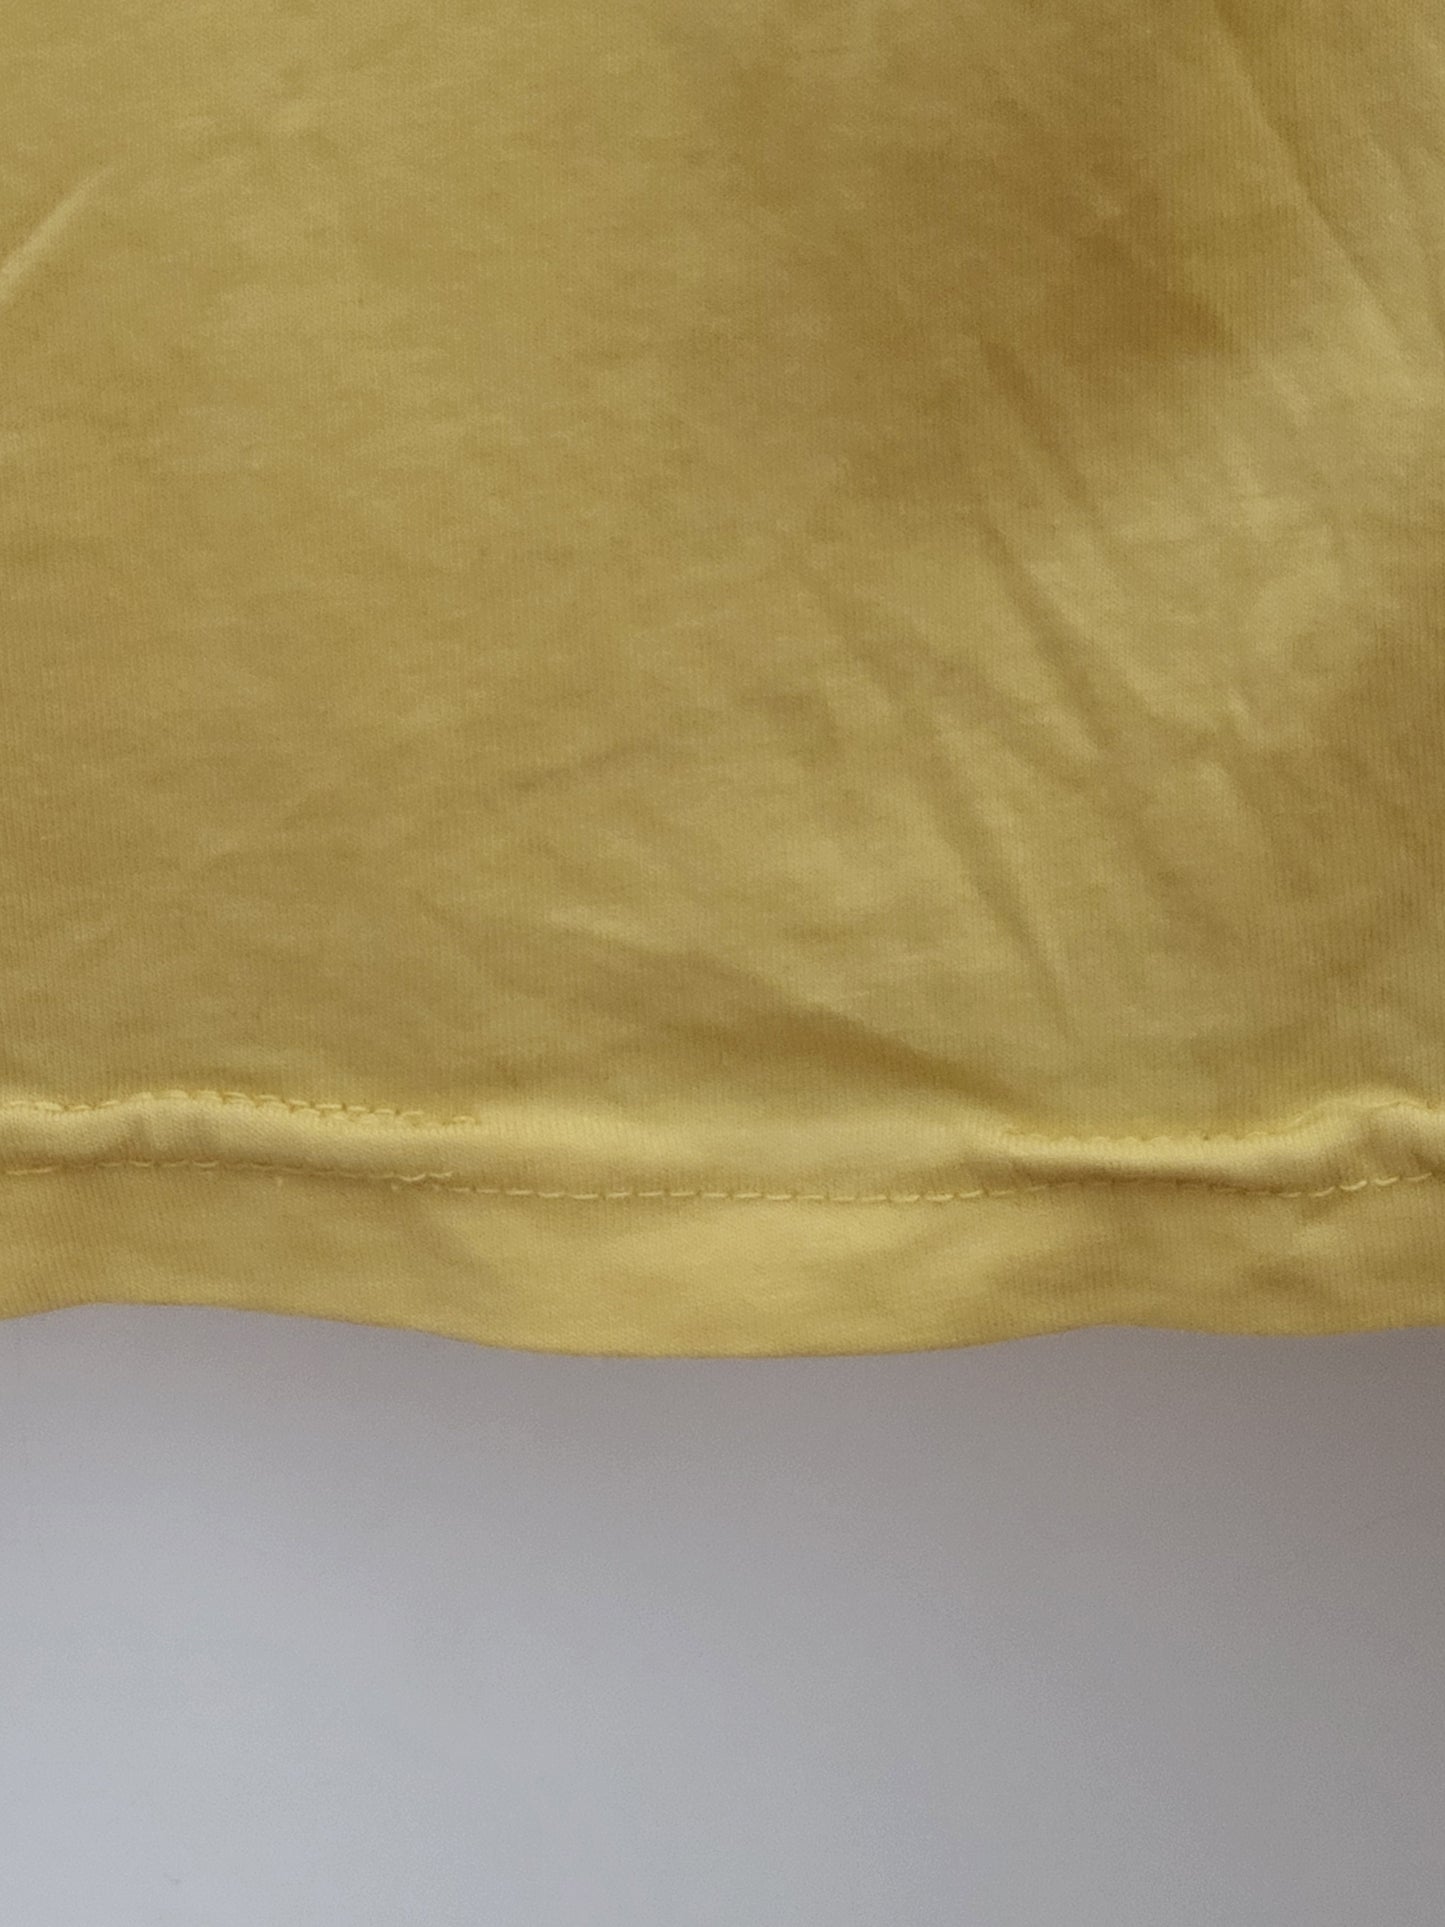 KENZO - T-Shirt - Klassisch - Gelb - Herren - L